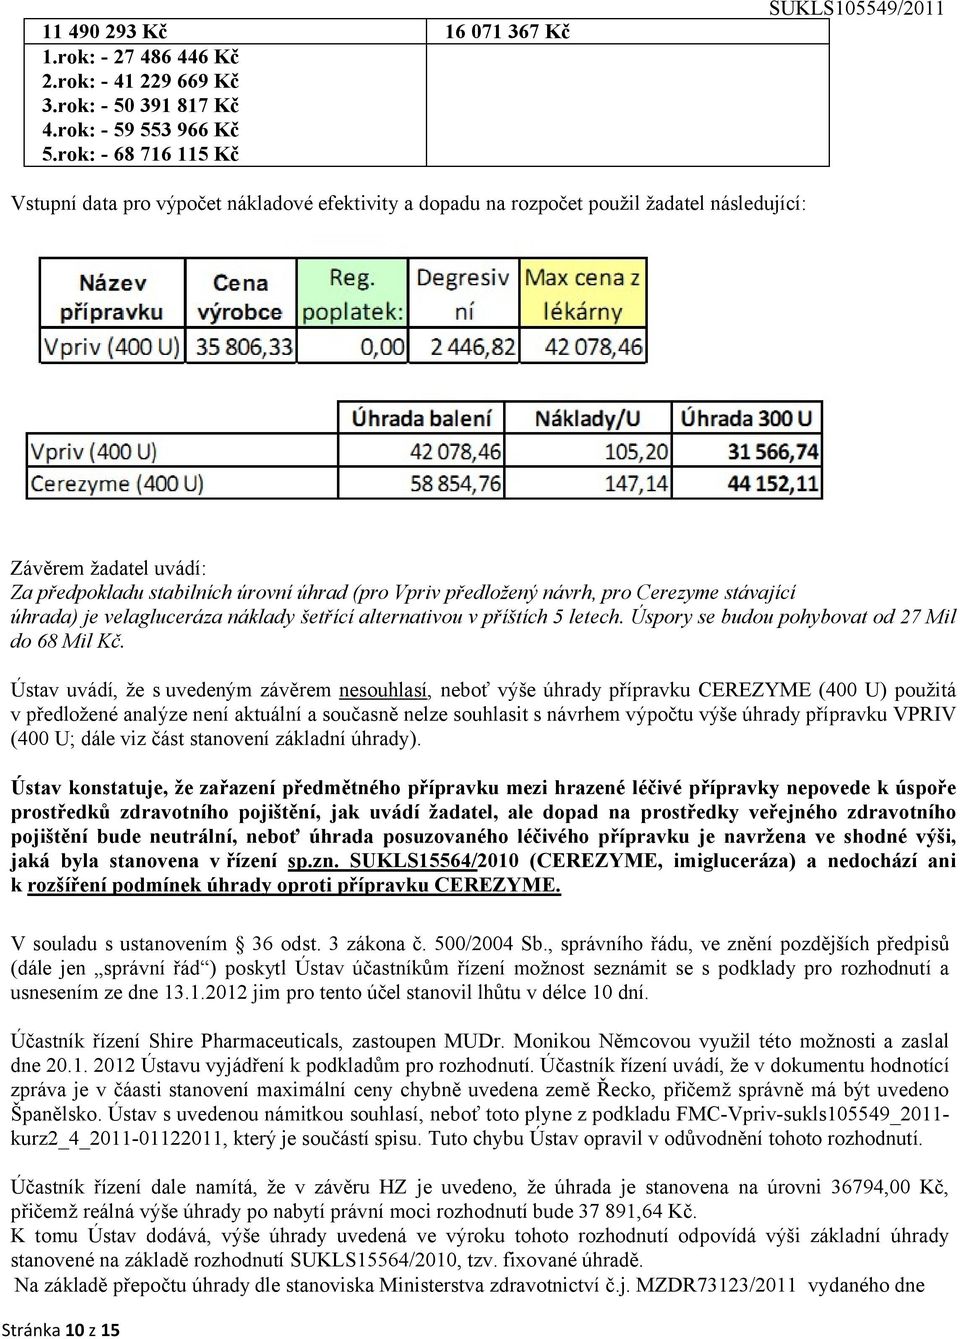 návrh, pro Cerezyme stávající úhrada) je velagluceráza náklady šetřící alternativou v příštích 5 letech. Úspory se budou pohybovat od 27 Mil do 68 Mil Kč.